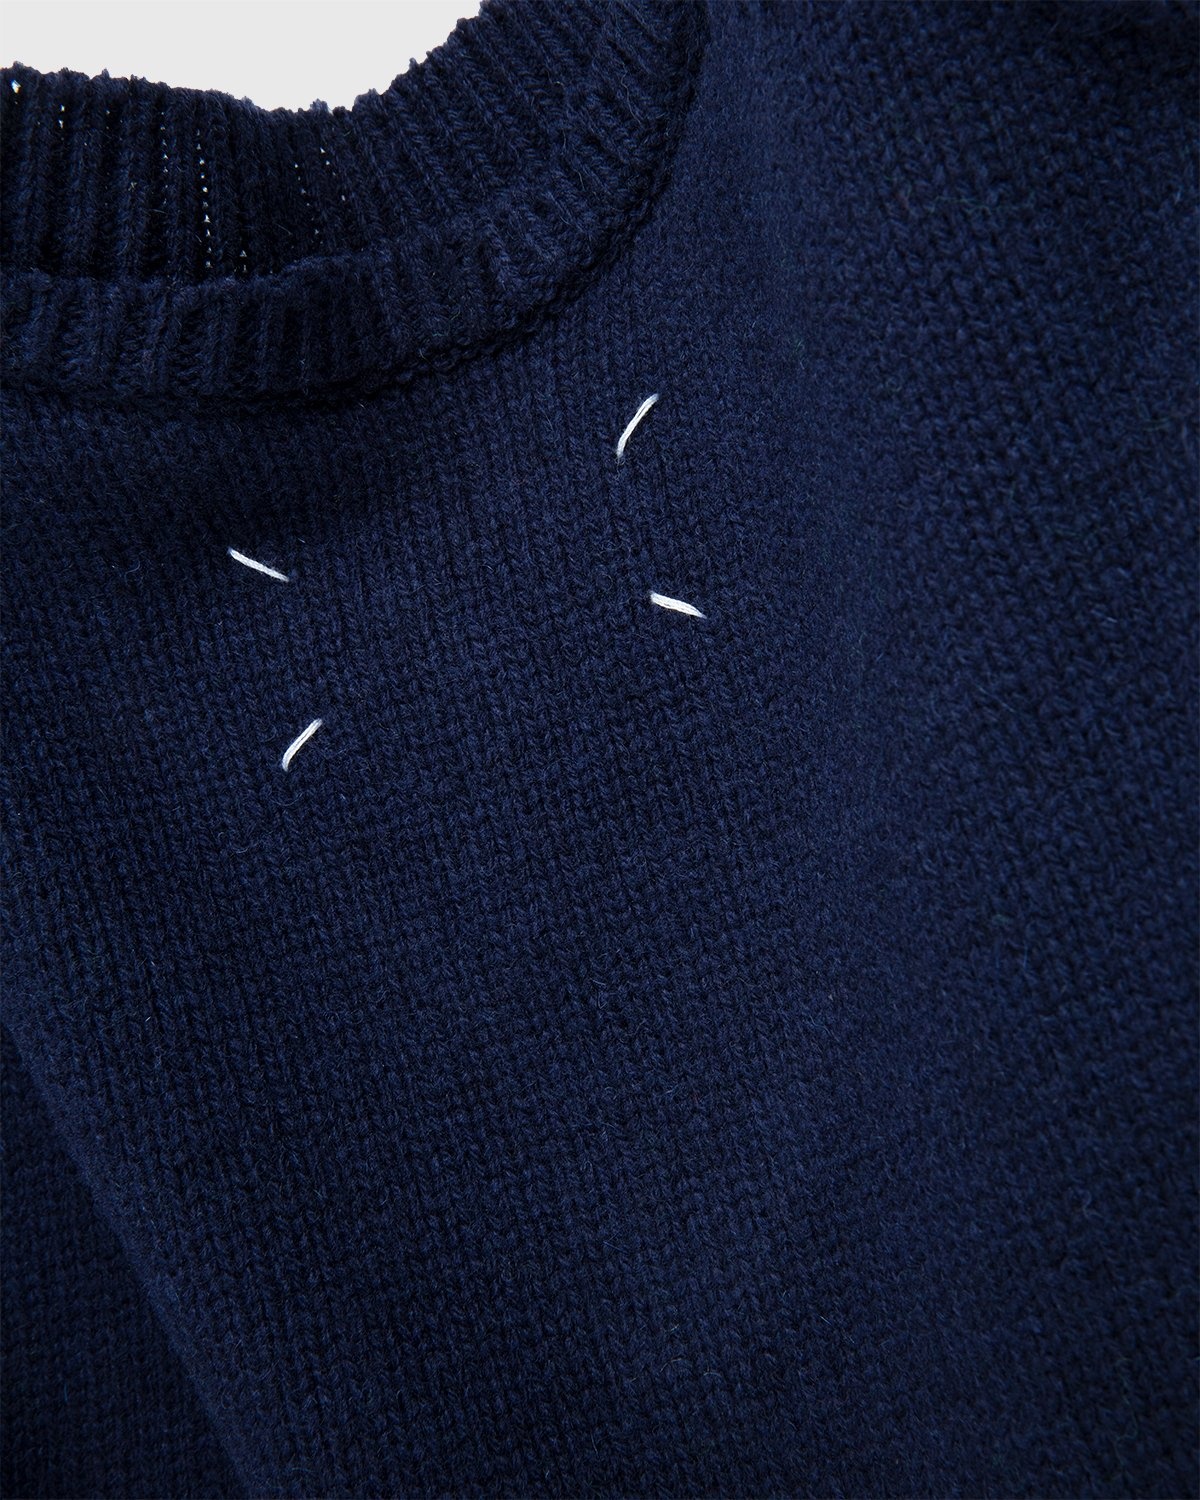 Maison Margiela – Sweater Navy - Knitwear - Blue - Image 4